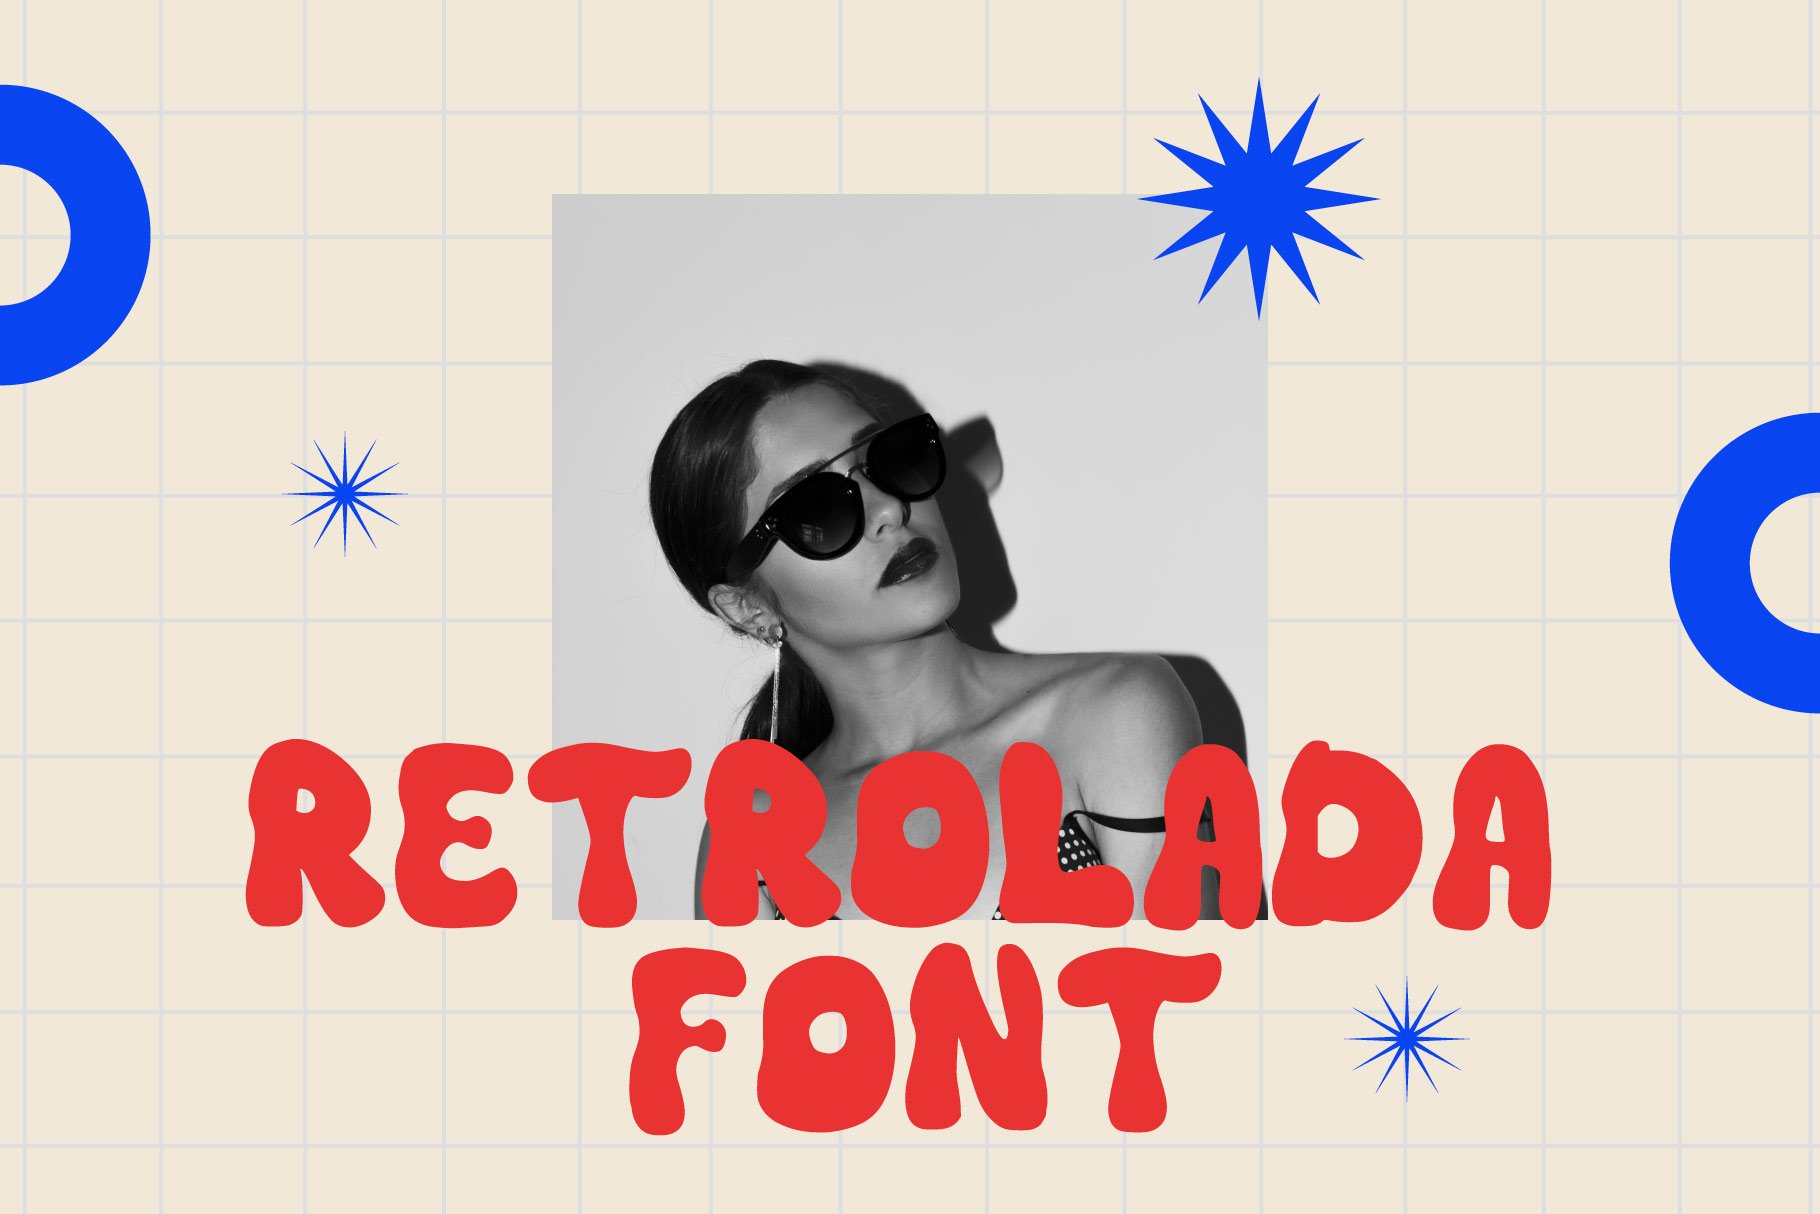 RETROLADA - retro font cover image.